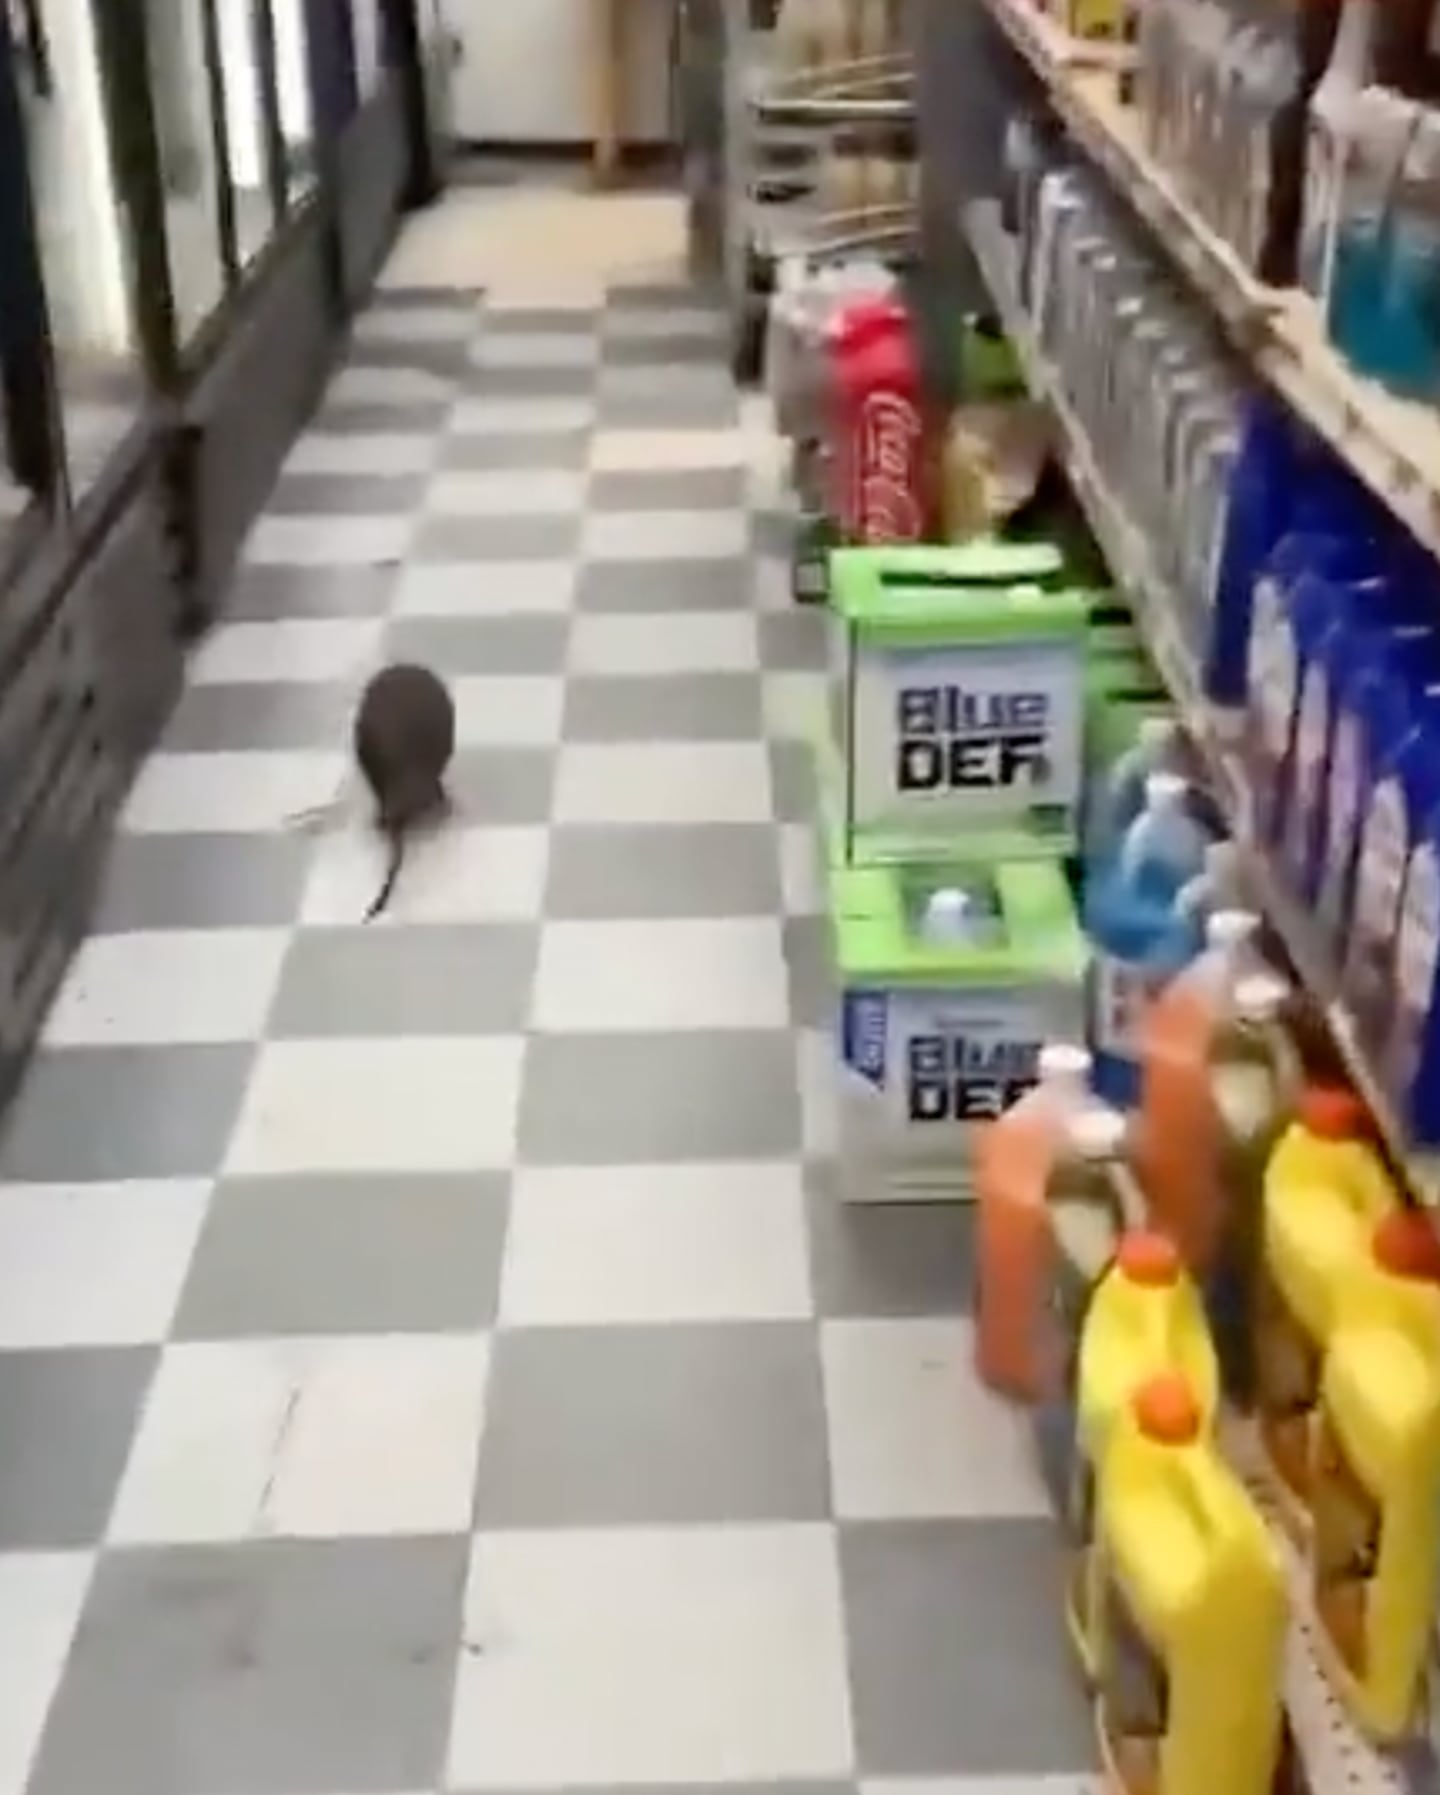 Captan a rata gigante en una tienda de Nueva York